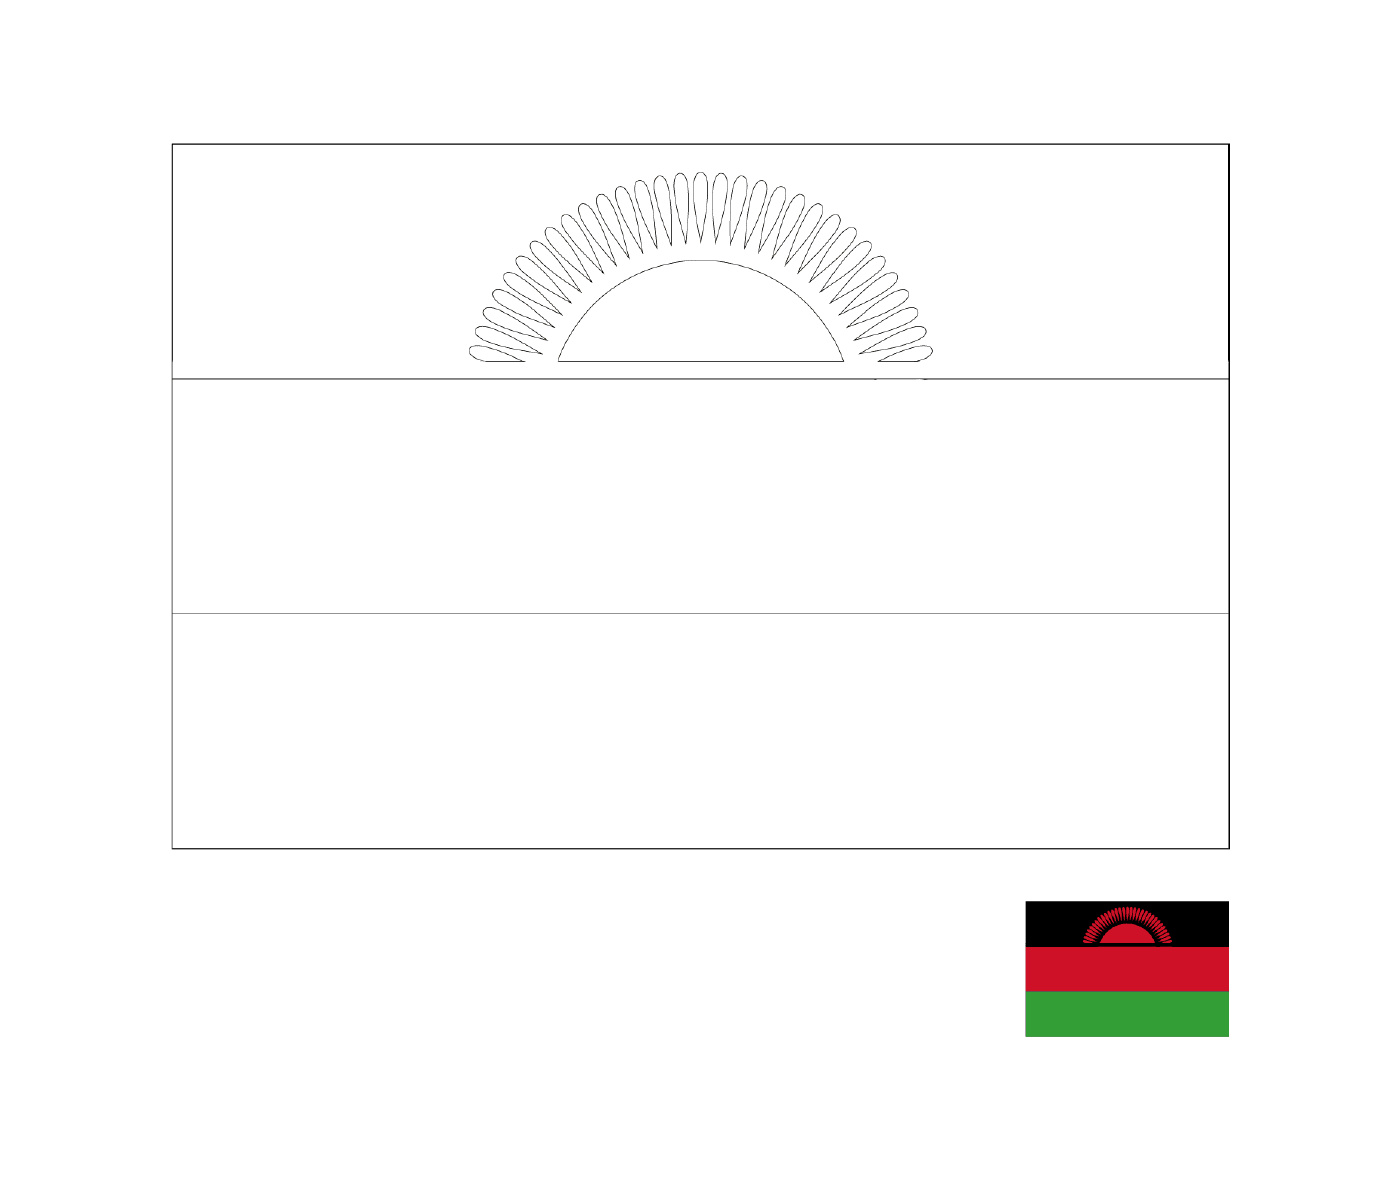  ألف علم ملاوي 